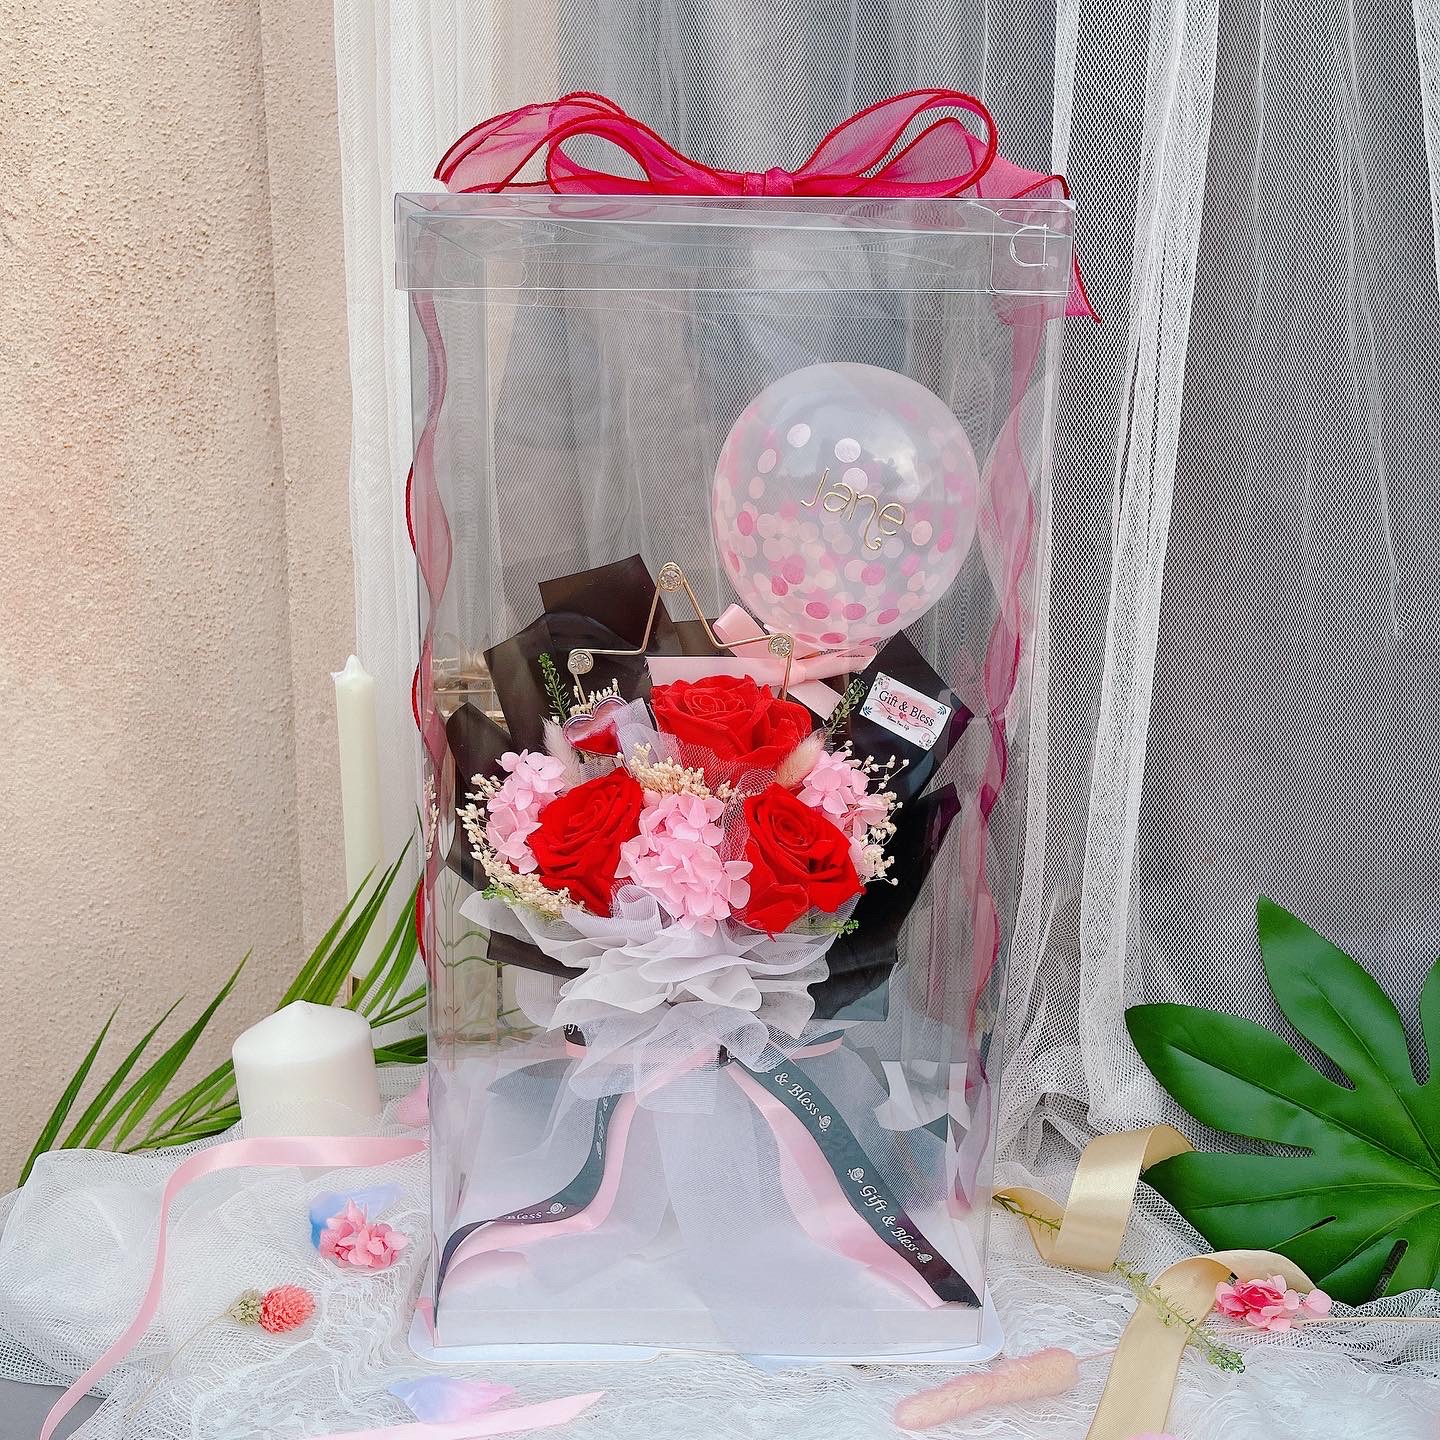 AB1B8808 6D1A 4161 A66E 48E2C2185BD8 l Welcome To Gift & bless| Florist |Flower Bouquet | Flower Workshop | 网上花店 | 花艺 | 花束 | 永生花 | 花艺工作坊